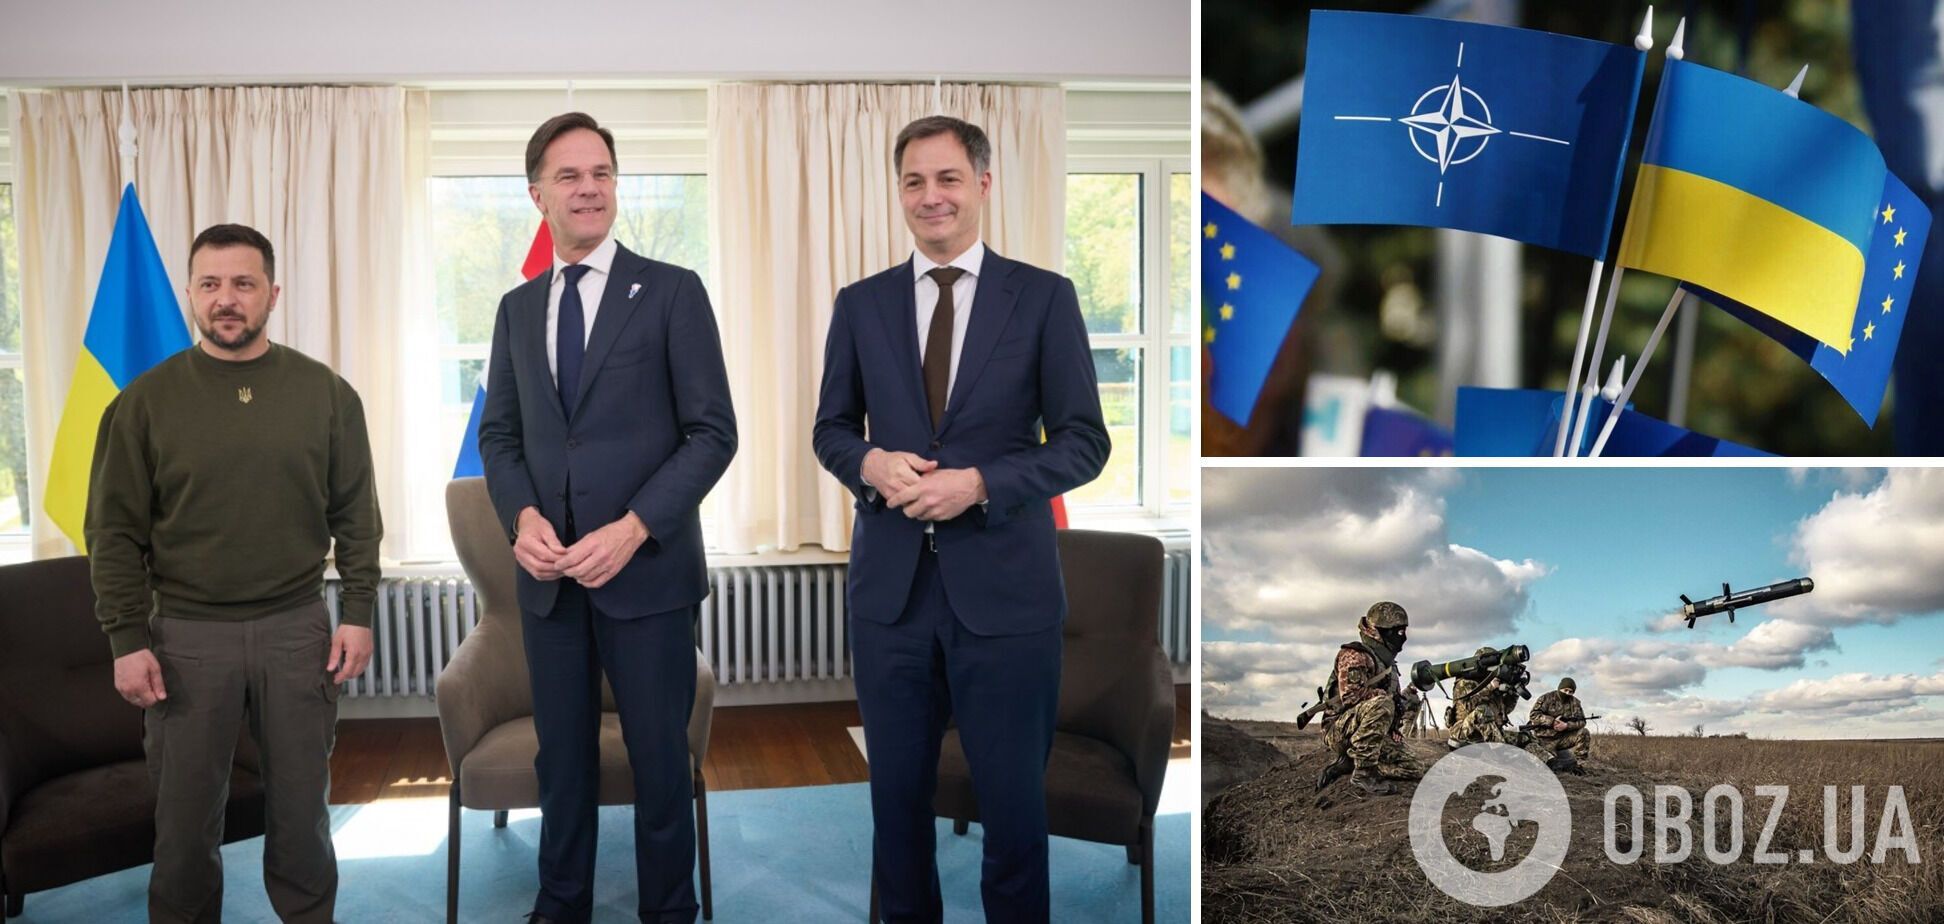 Нідерланди та Бельгія гарантували Україні військову підтримку: оголошено про декларацію і підтримку трибуналу над РФ